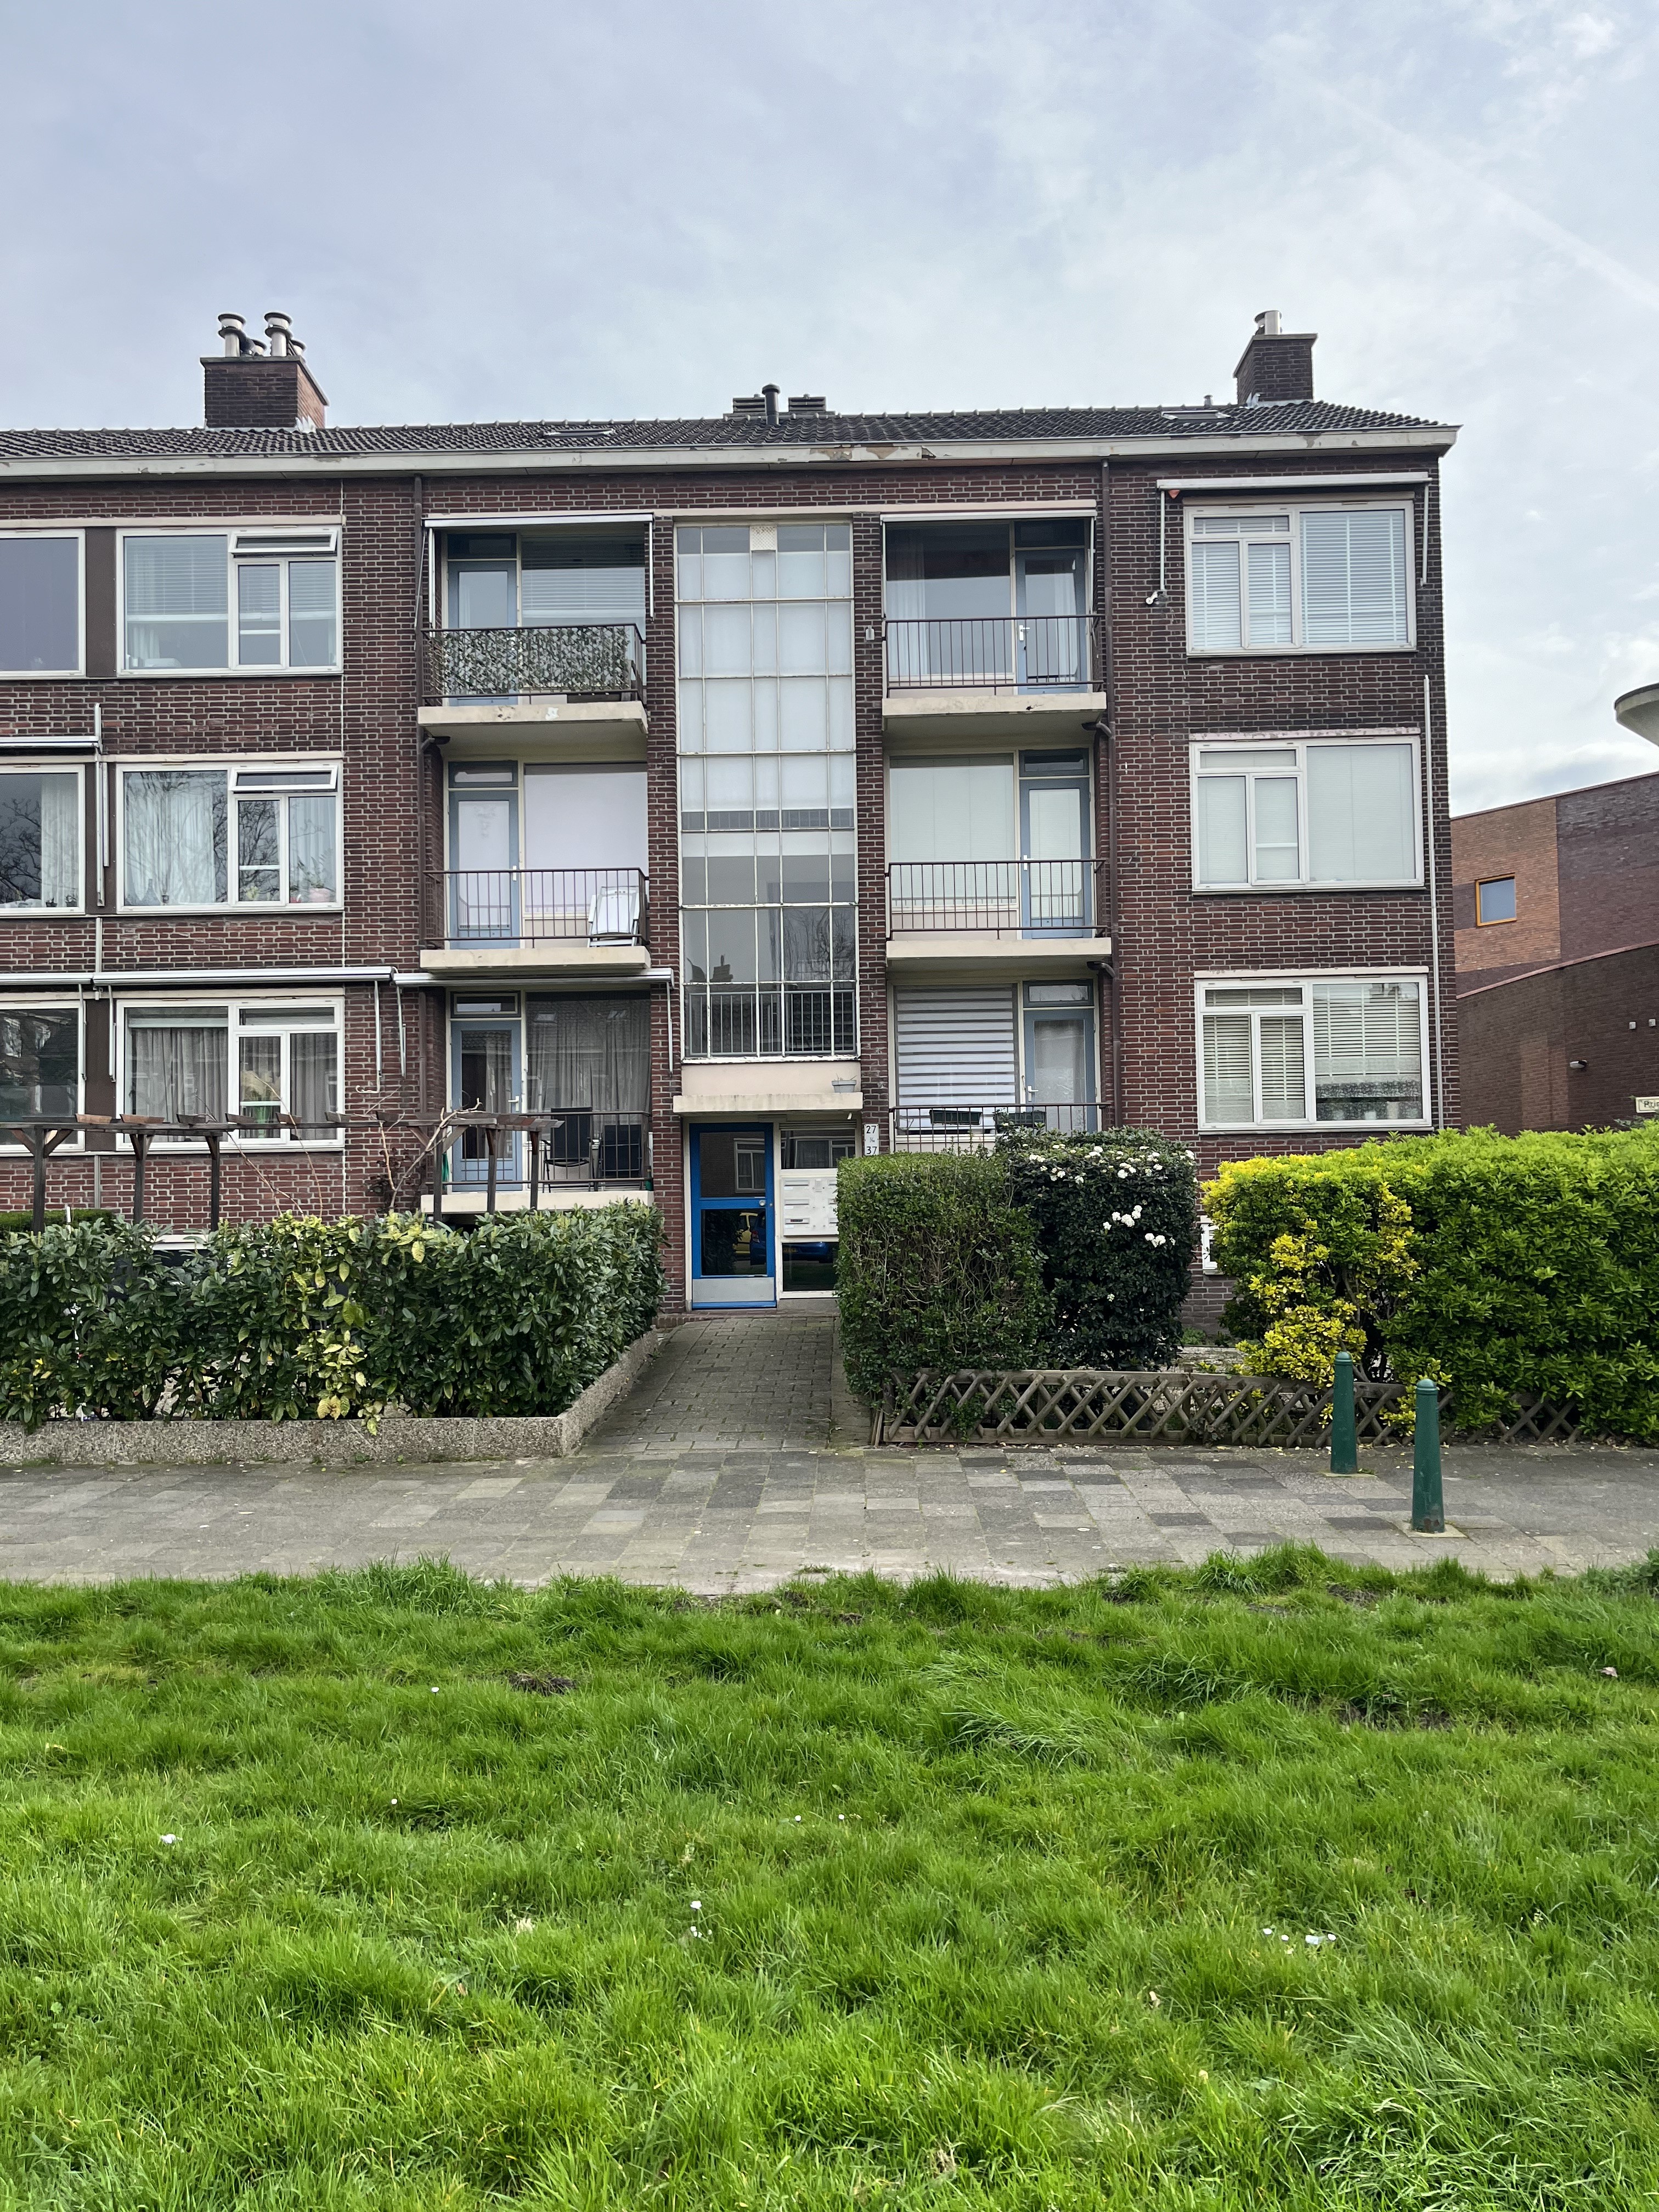 Minister Aalberselaan 33, 2285 EN Rijswijk, Nederland